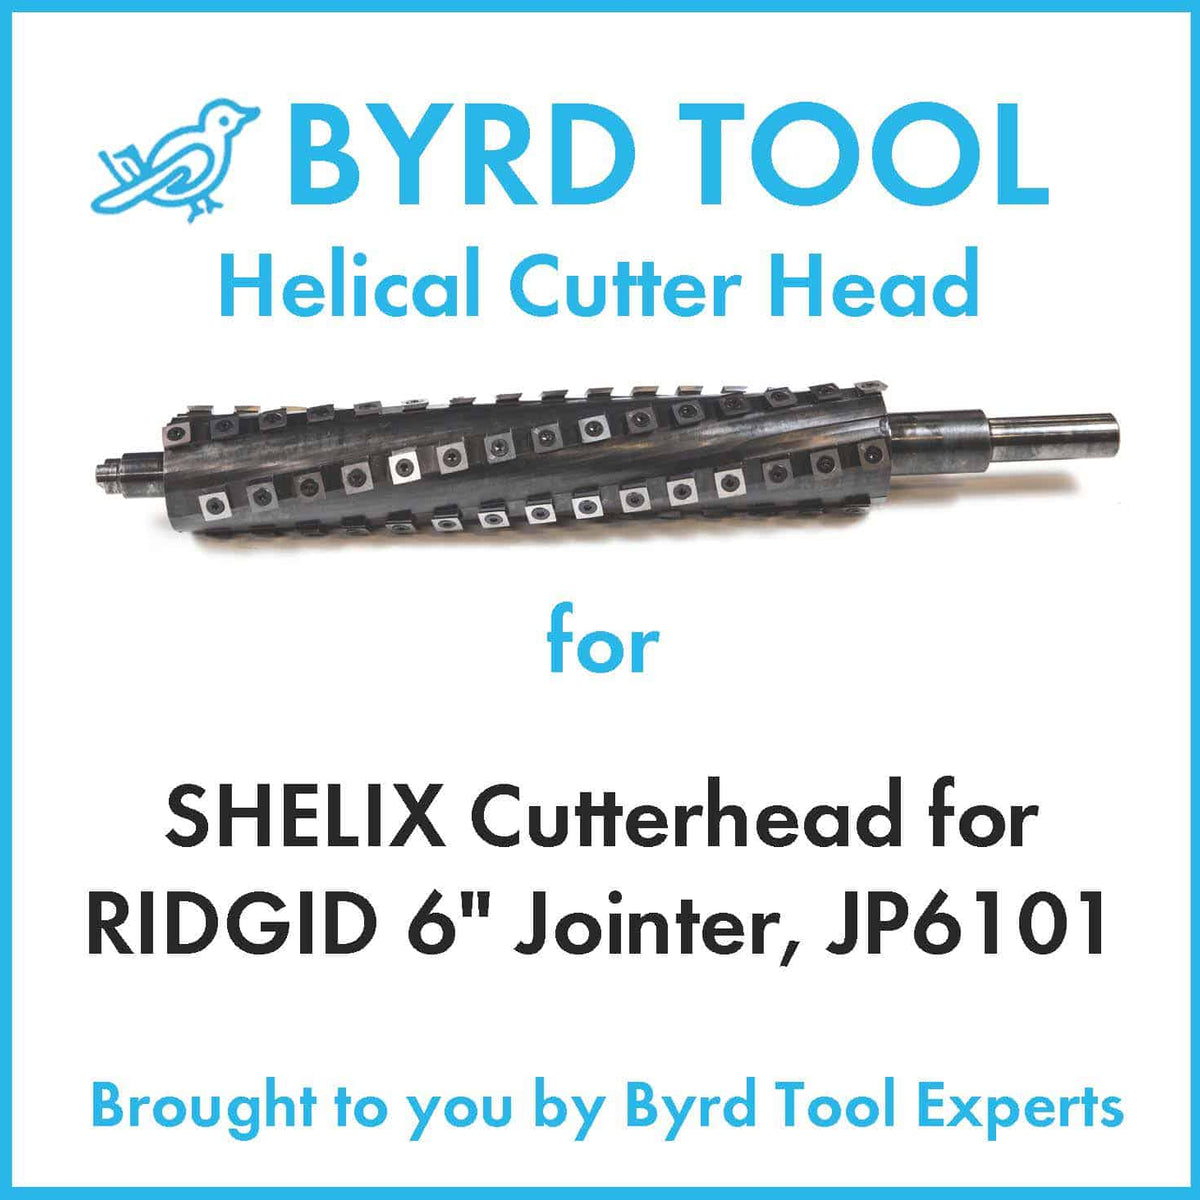 SHELIX Cutterhead for RIDGID 6″ Jointer, JP6101